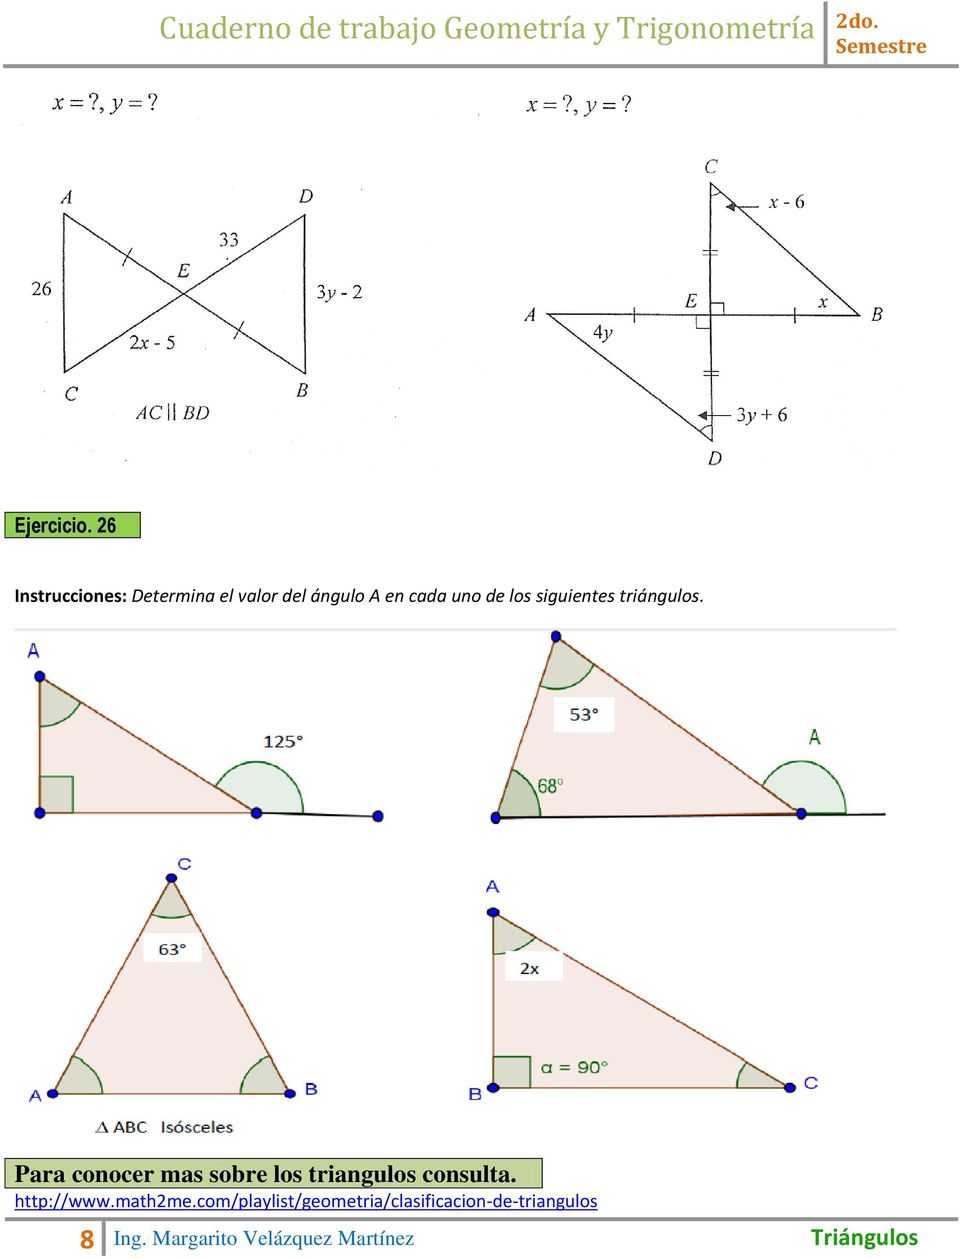 los siguientes triángulos.